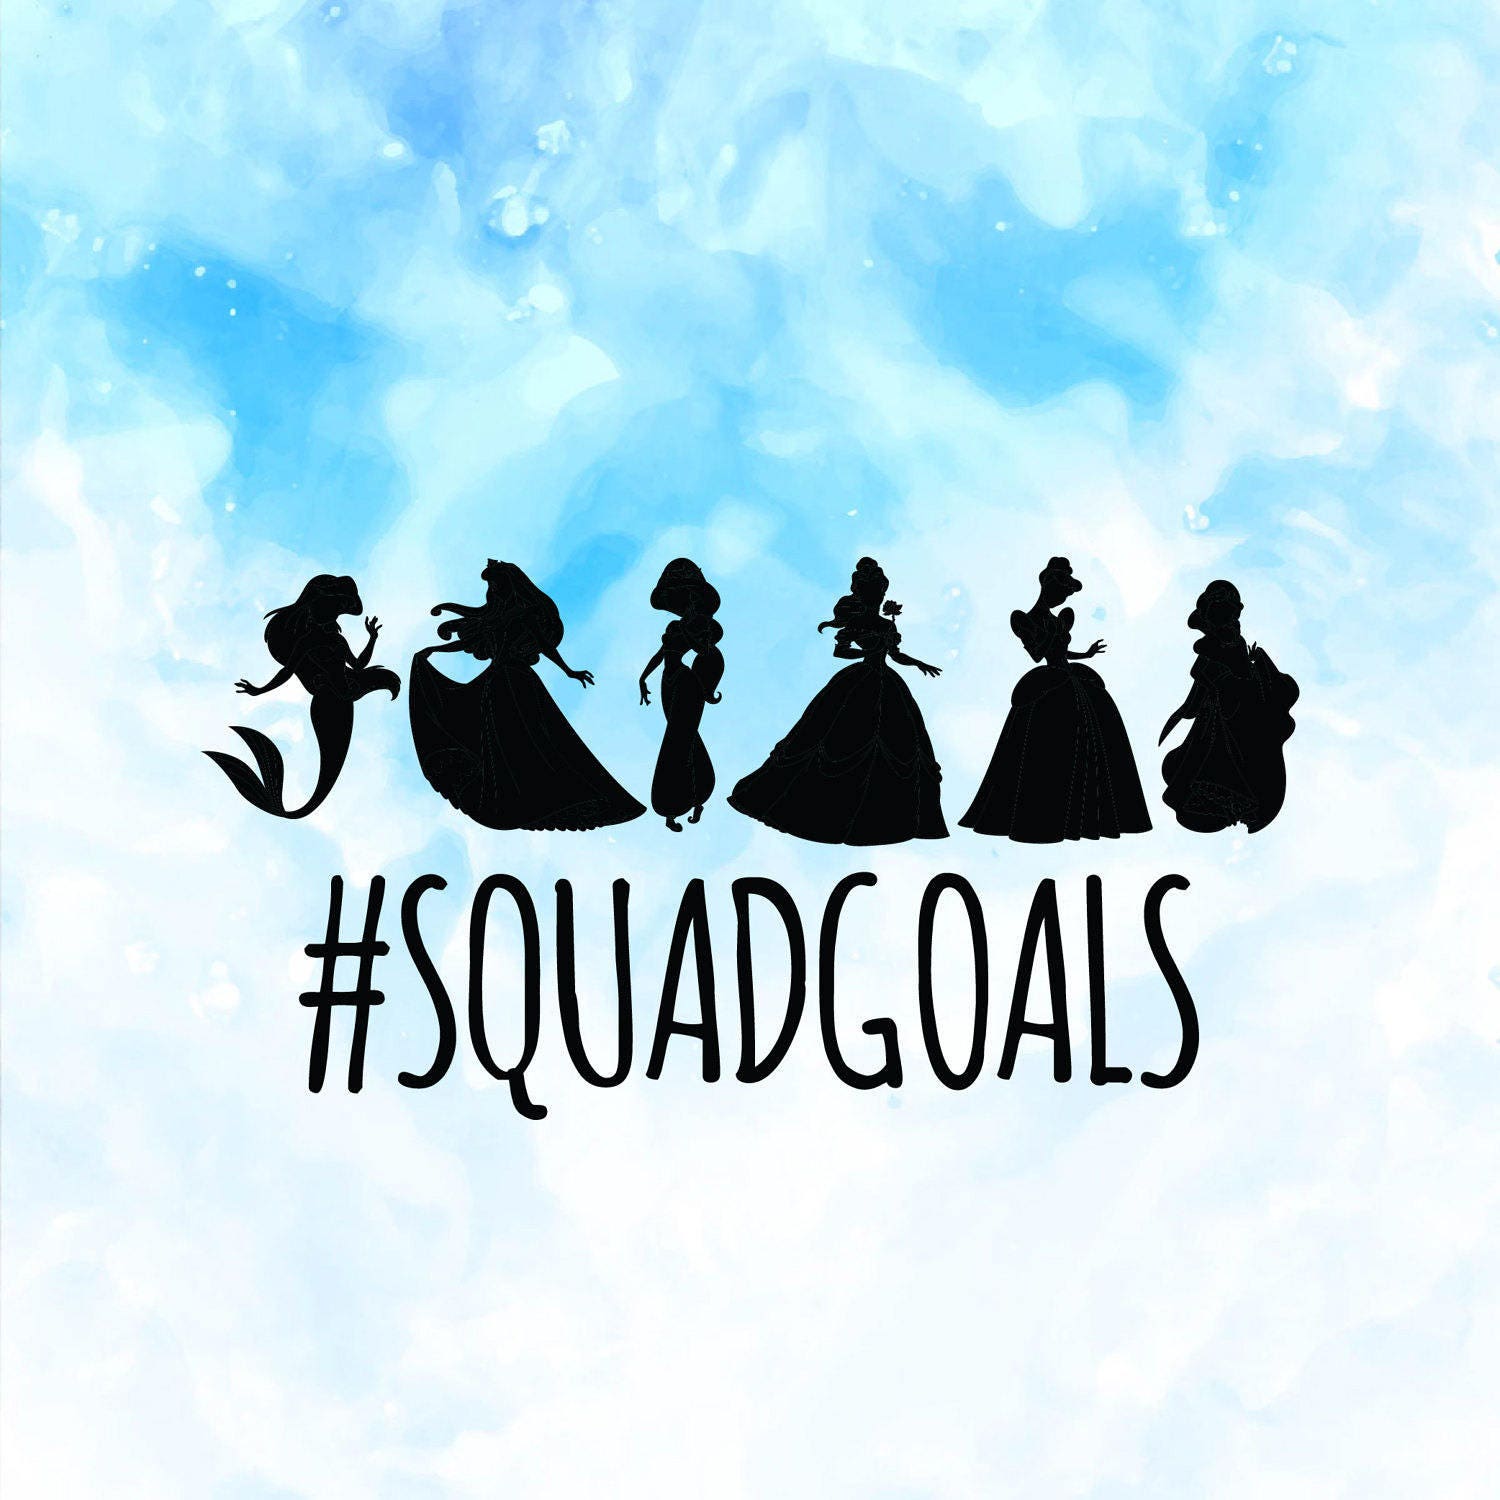 Sale Squad Goals SVG Princess Squadgoals SVG Cinderella